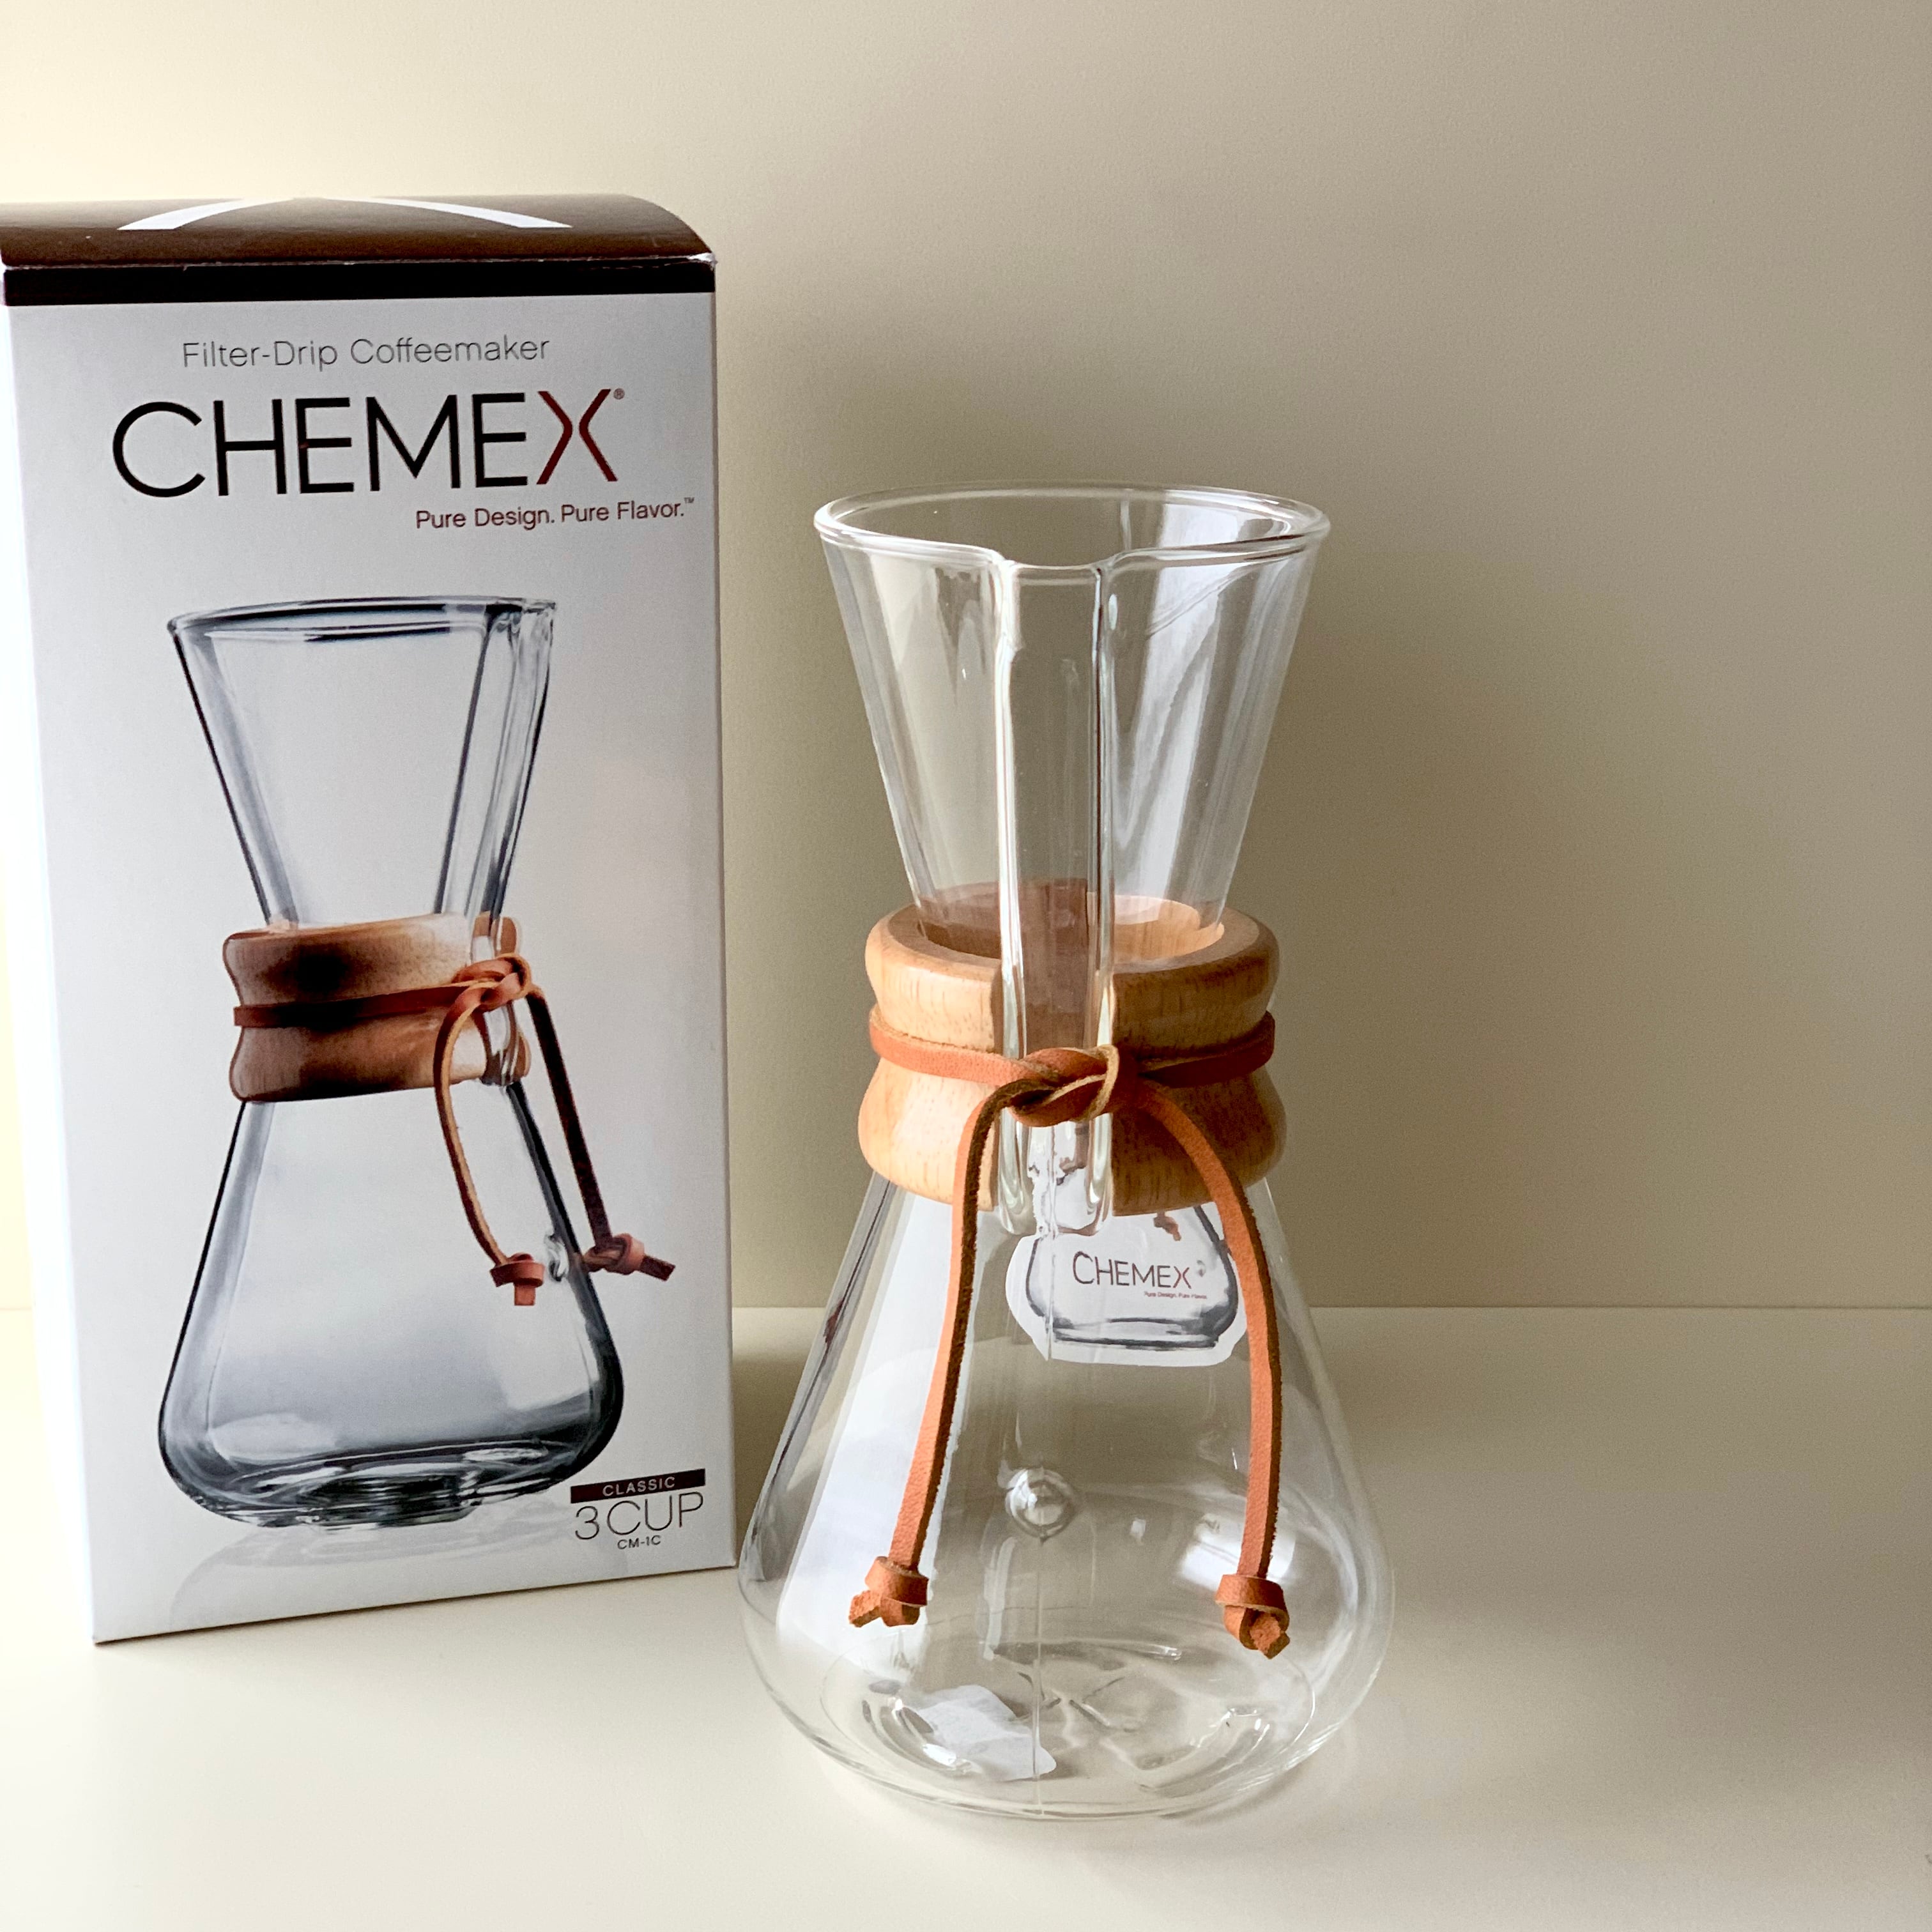 chemexCHEMEX Filter-Drip Coffeemaker